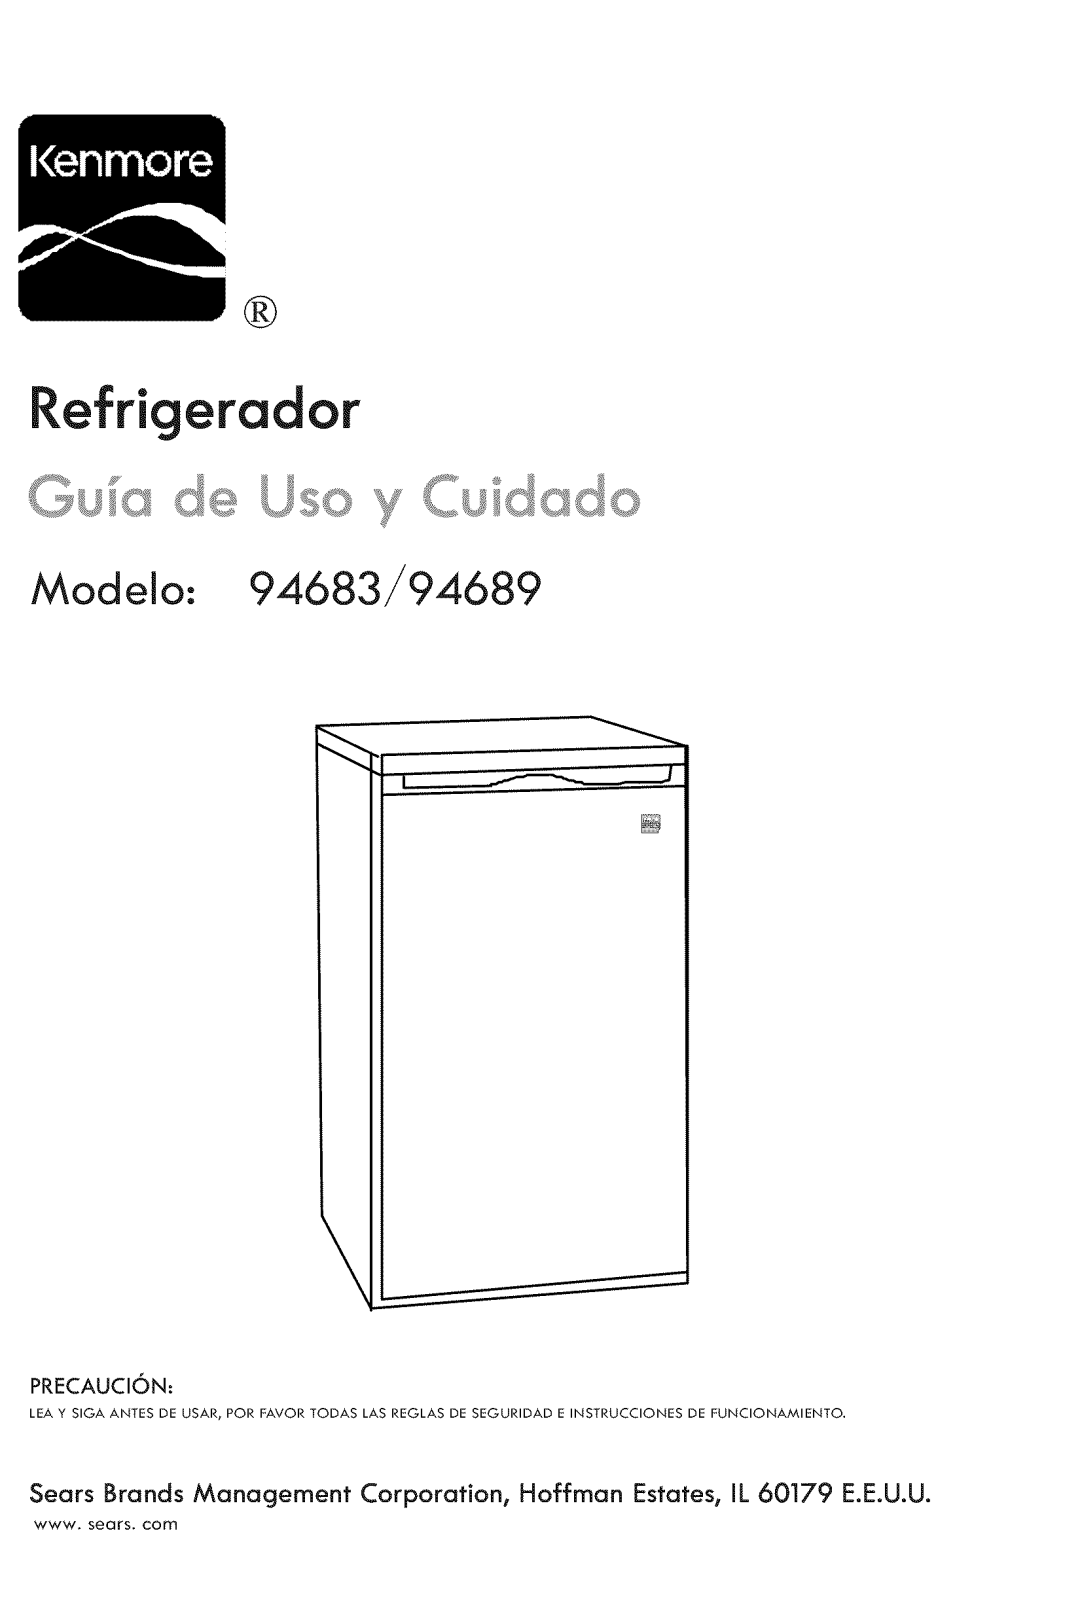 Kenmore manual Refrigerador, Modelo 94683/94689 